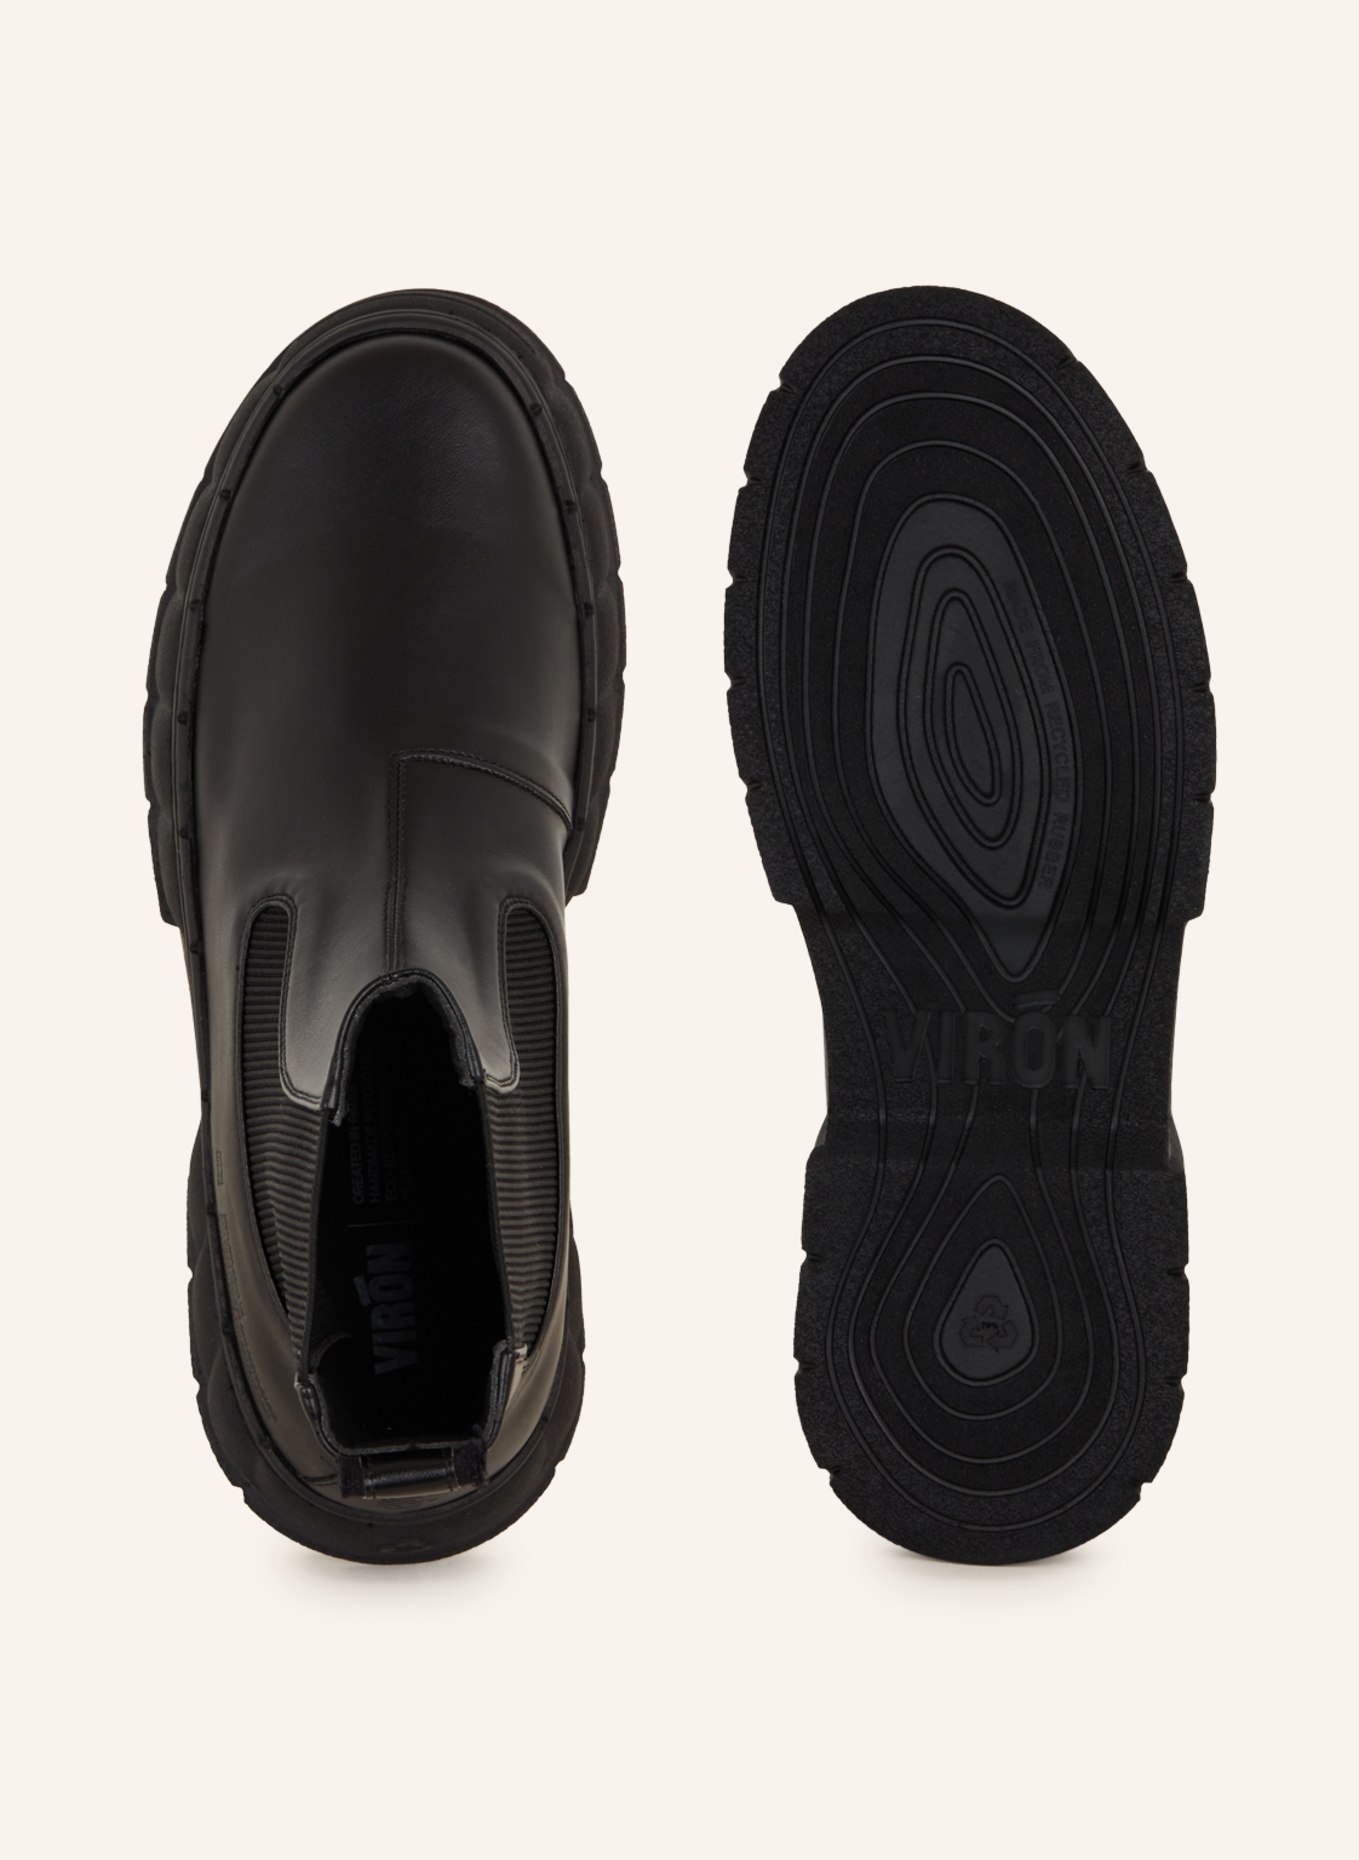 VIRÒN  boots 1997, Color: BLACK (Image 5)